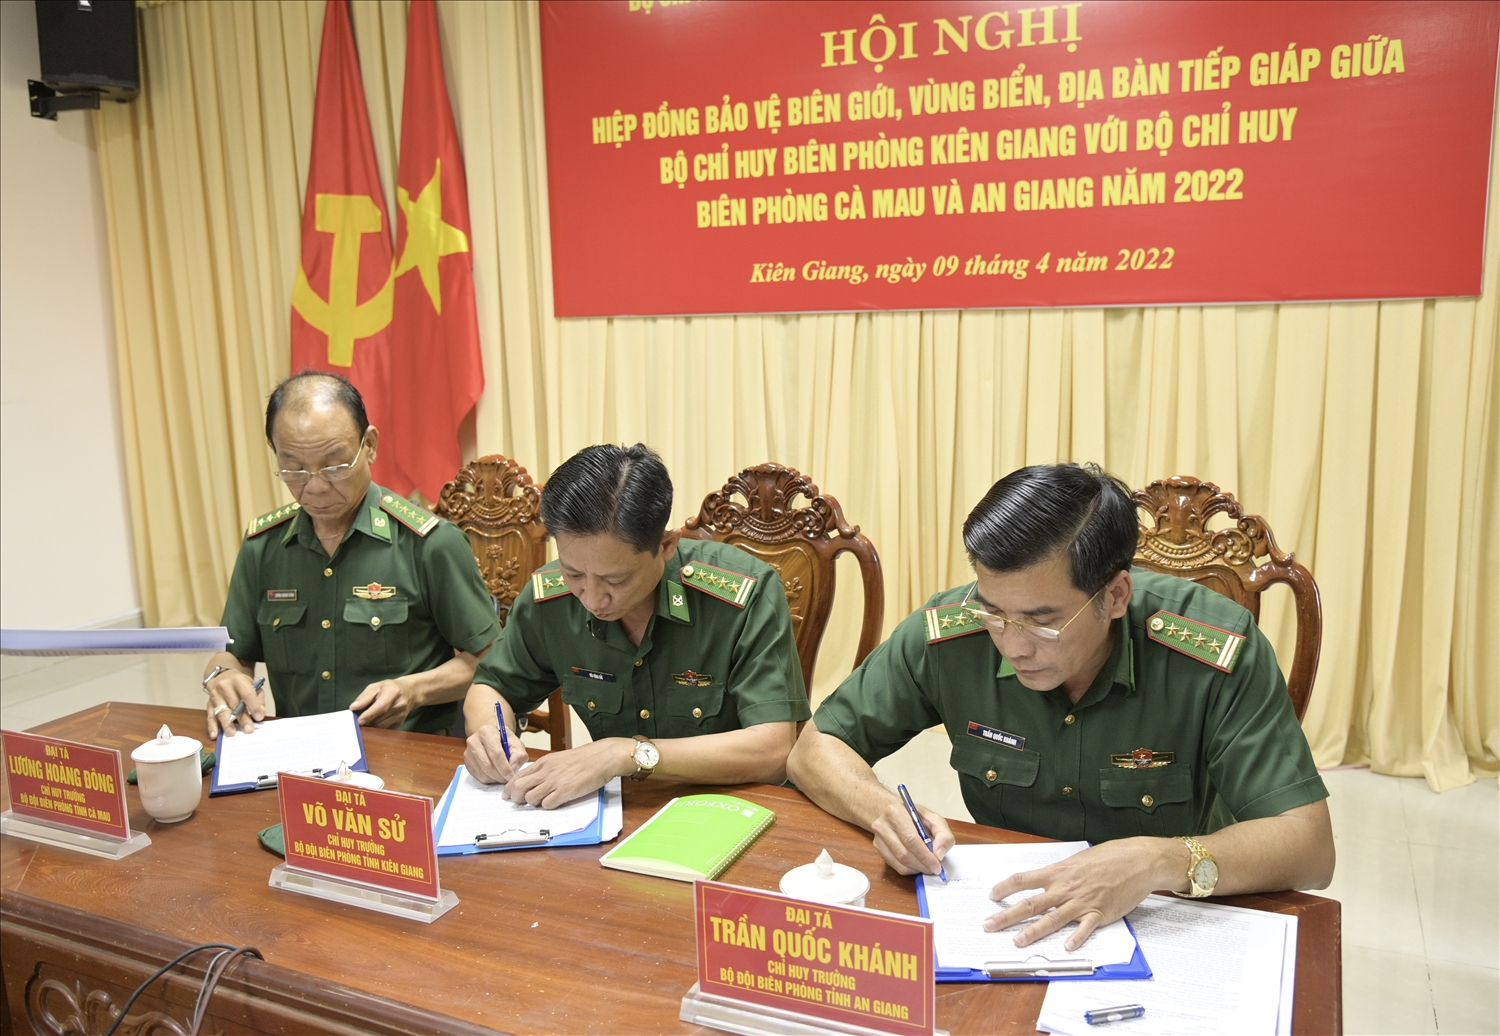 Chỉ huy trưởng của 3 đơn vị BĐBP Cà Mau, Kiên Giang và An Giang ký kết hiệp đồng